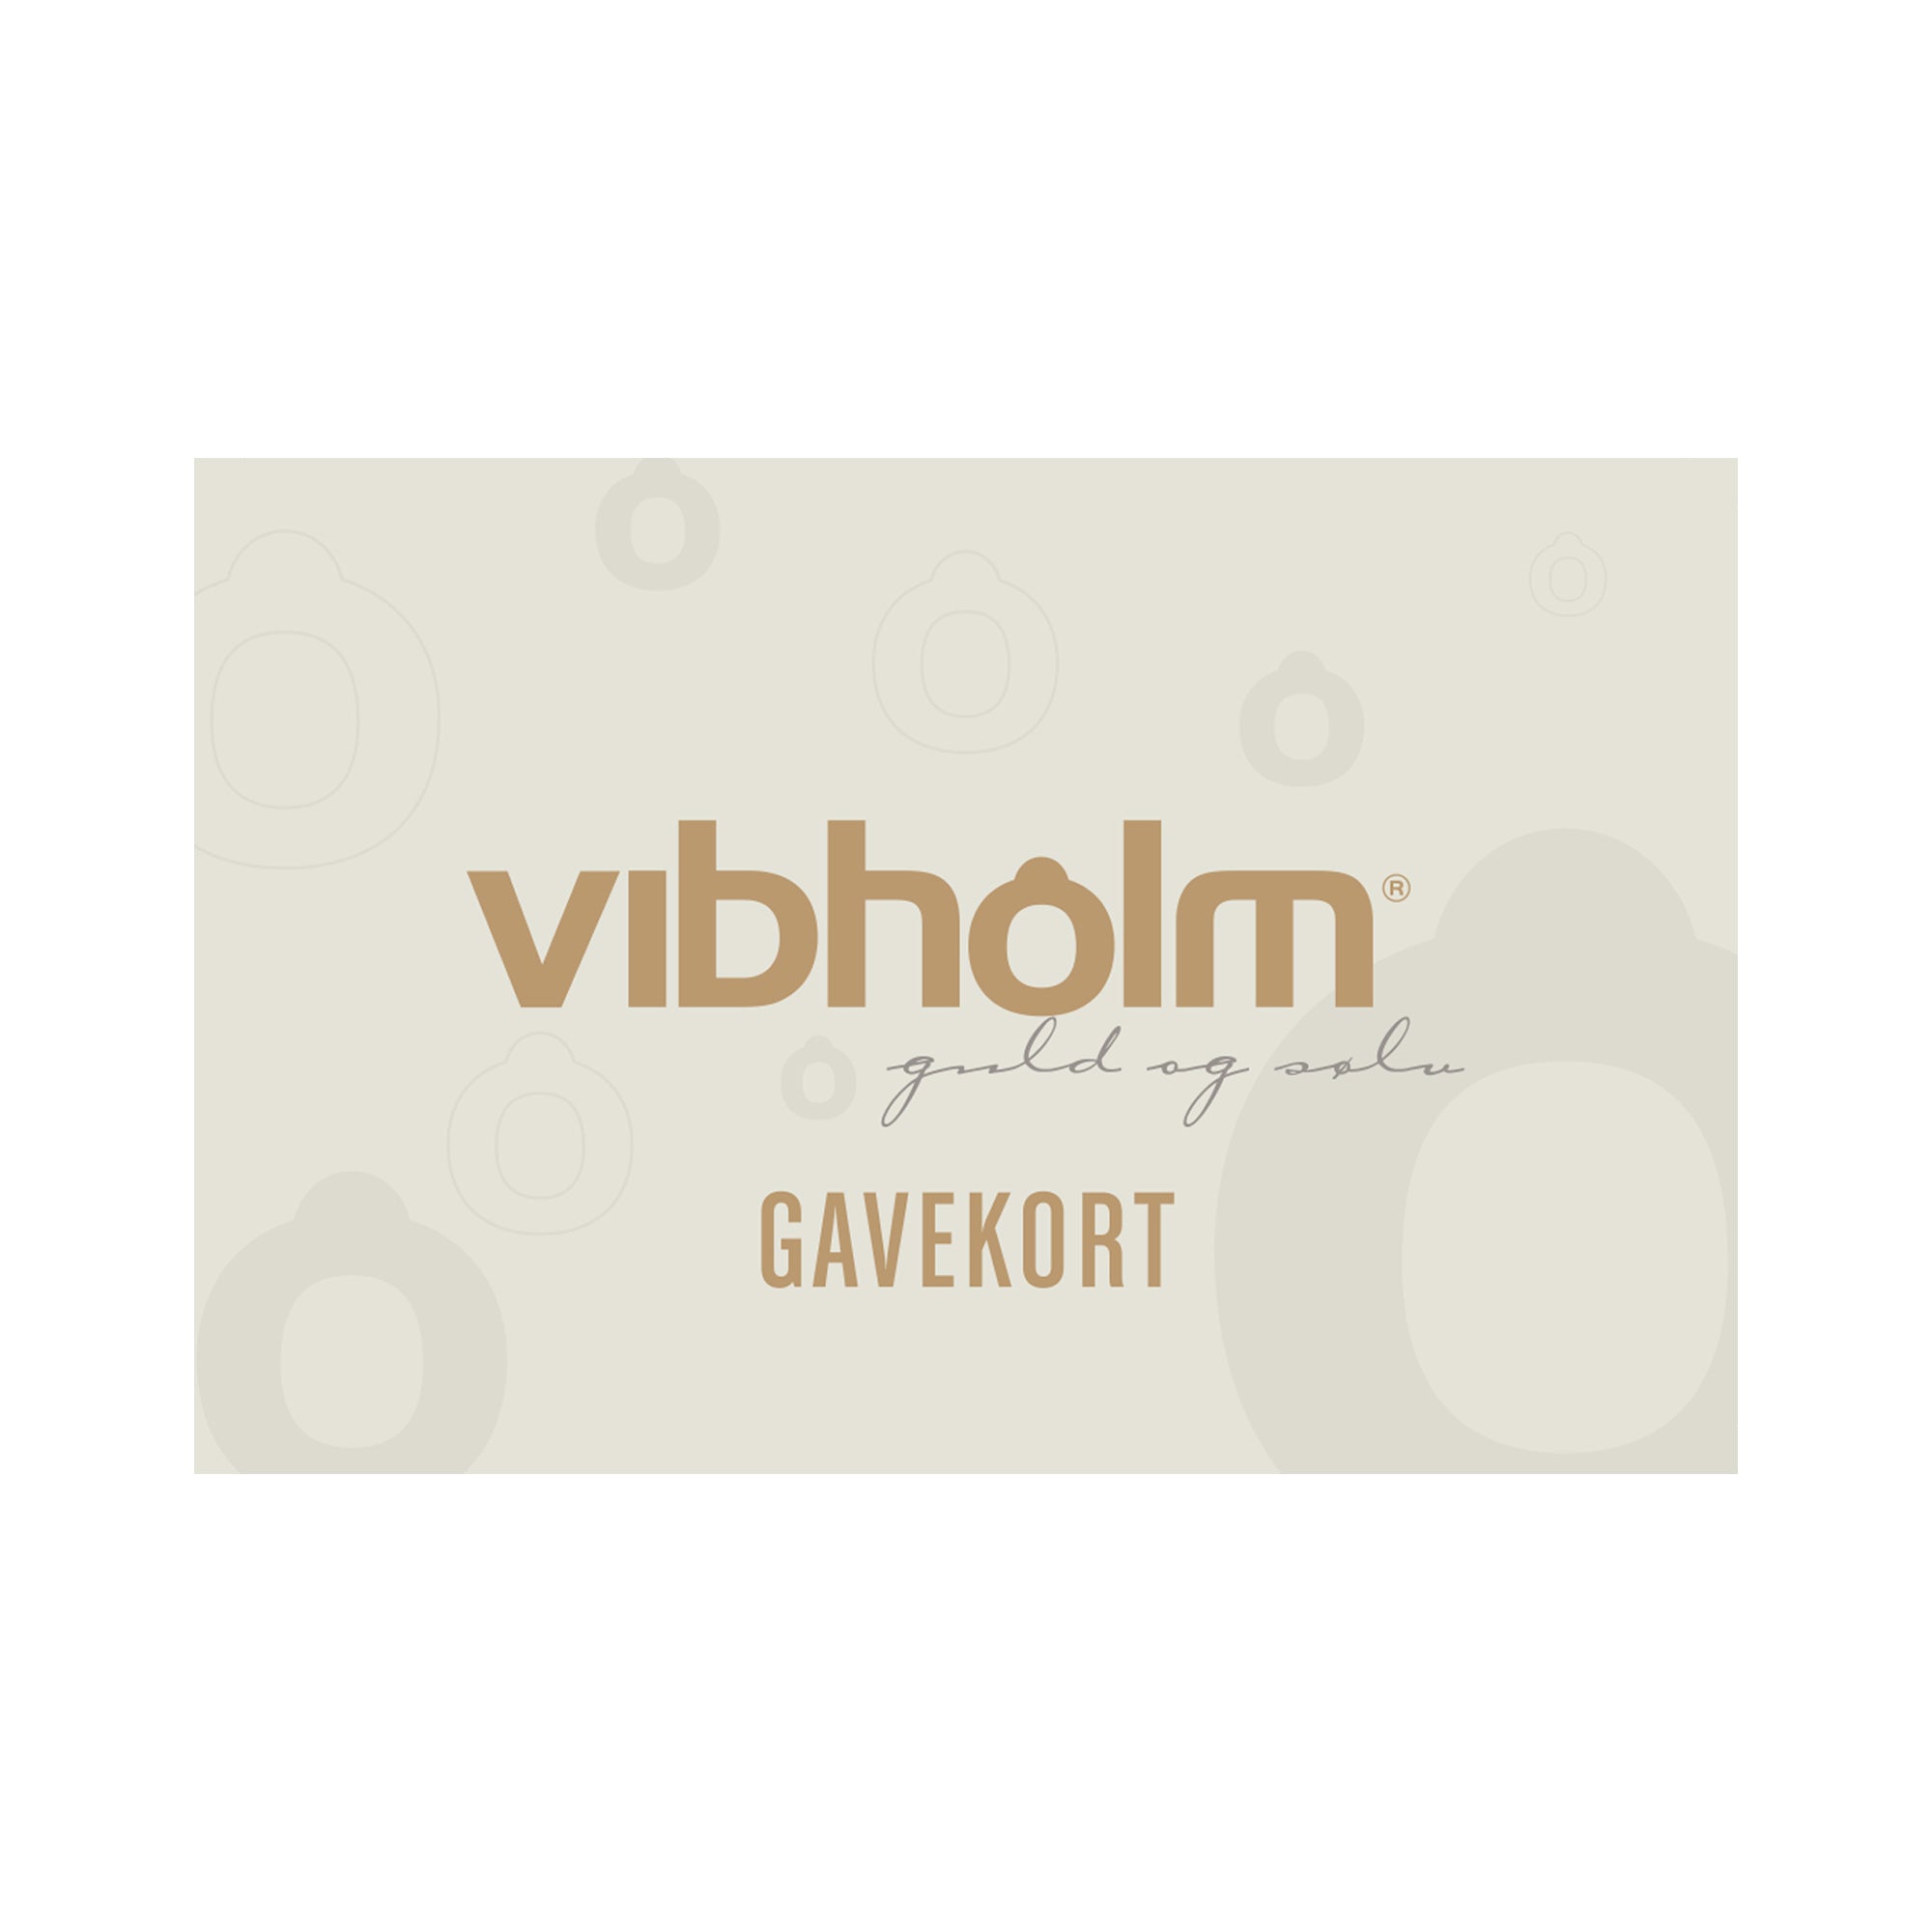 Se Vibholm gavekort 800 kr. hos Vibholm.dk